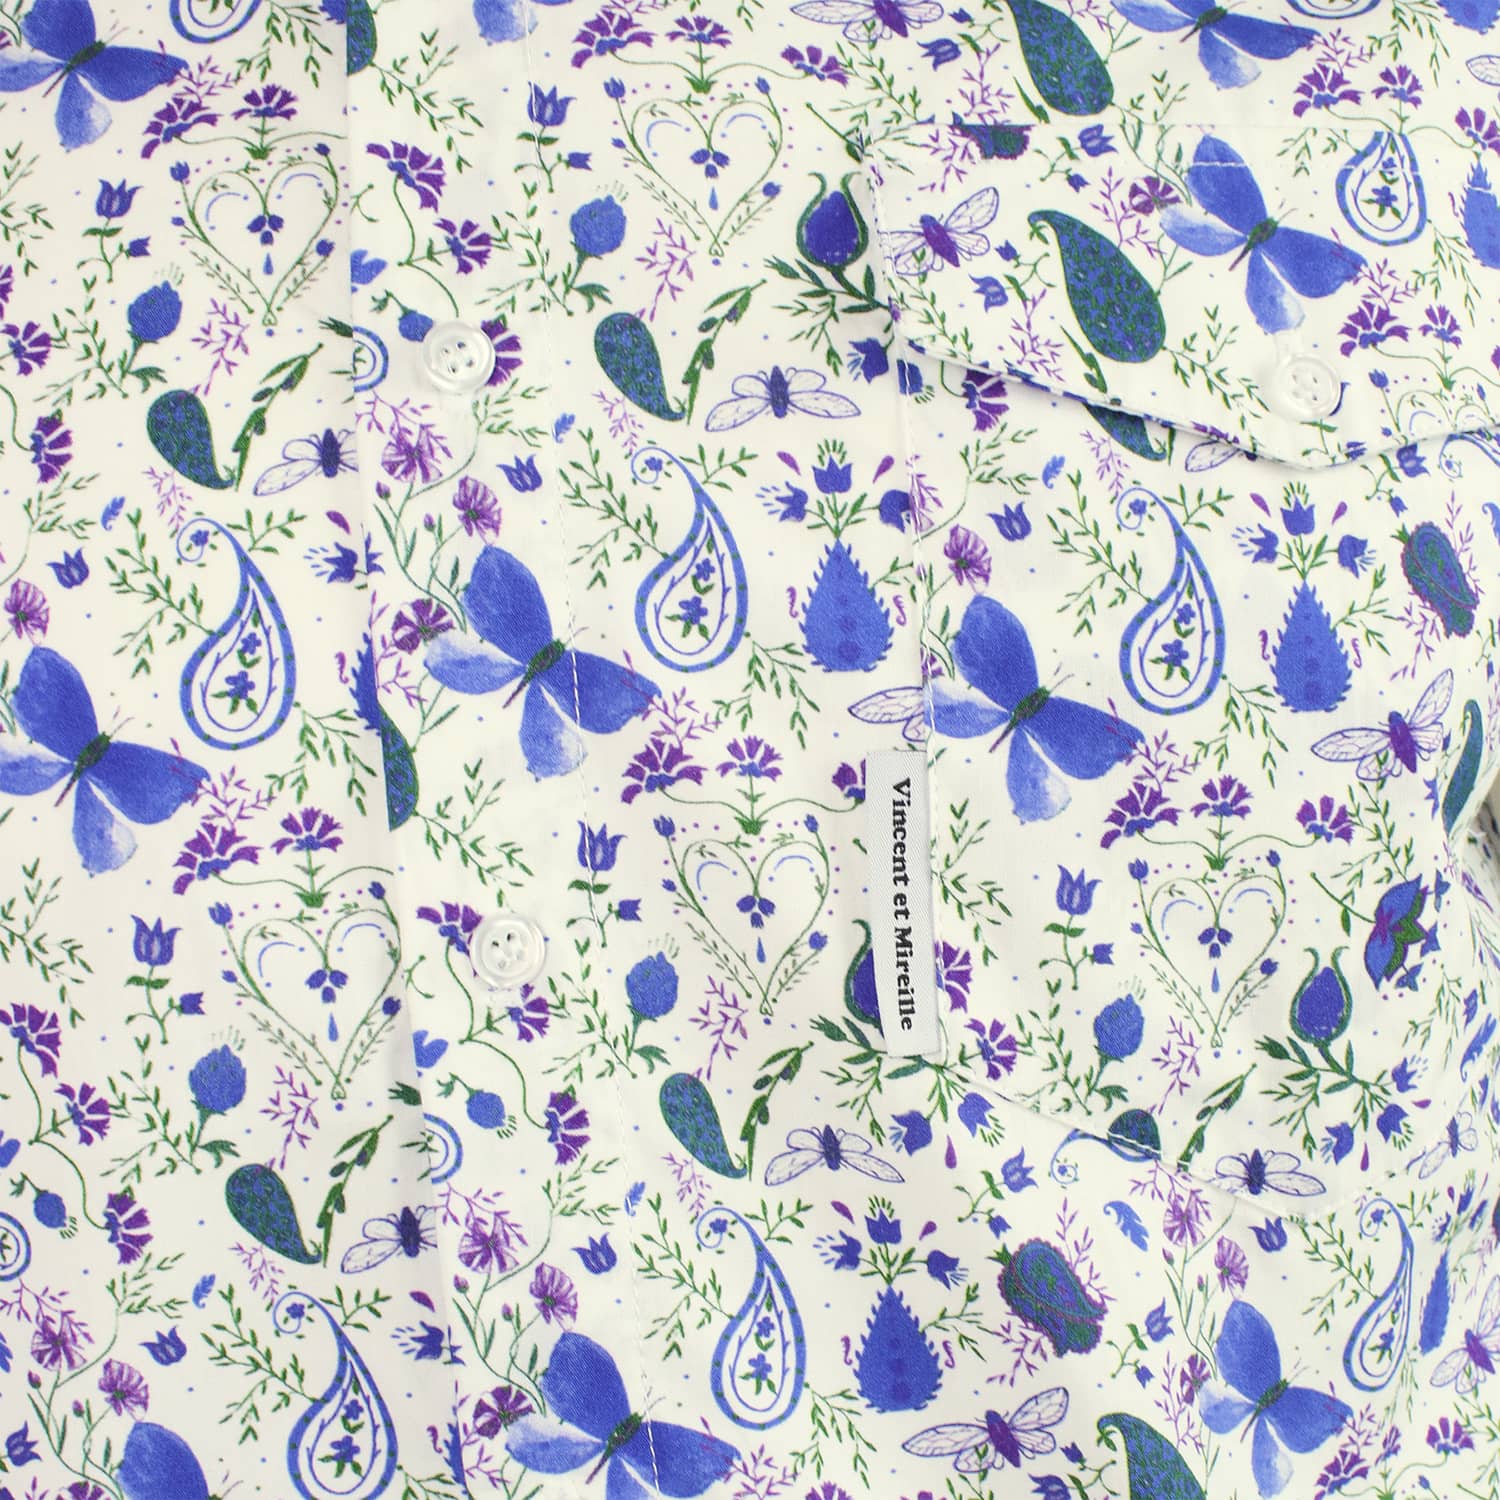 Le motif camargais Air de Provence créé par Vincent et Mireille